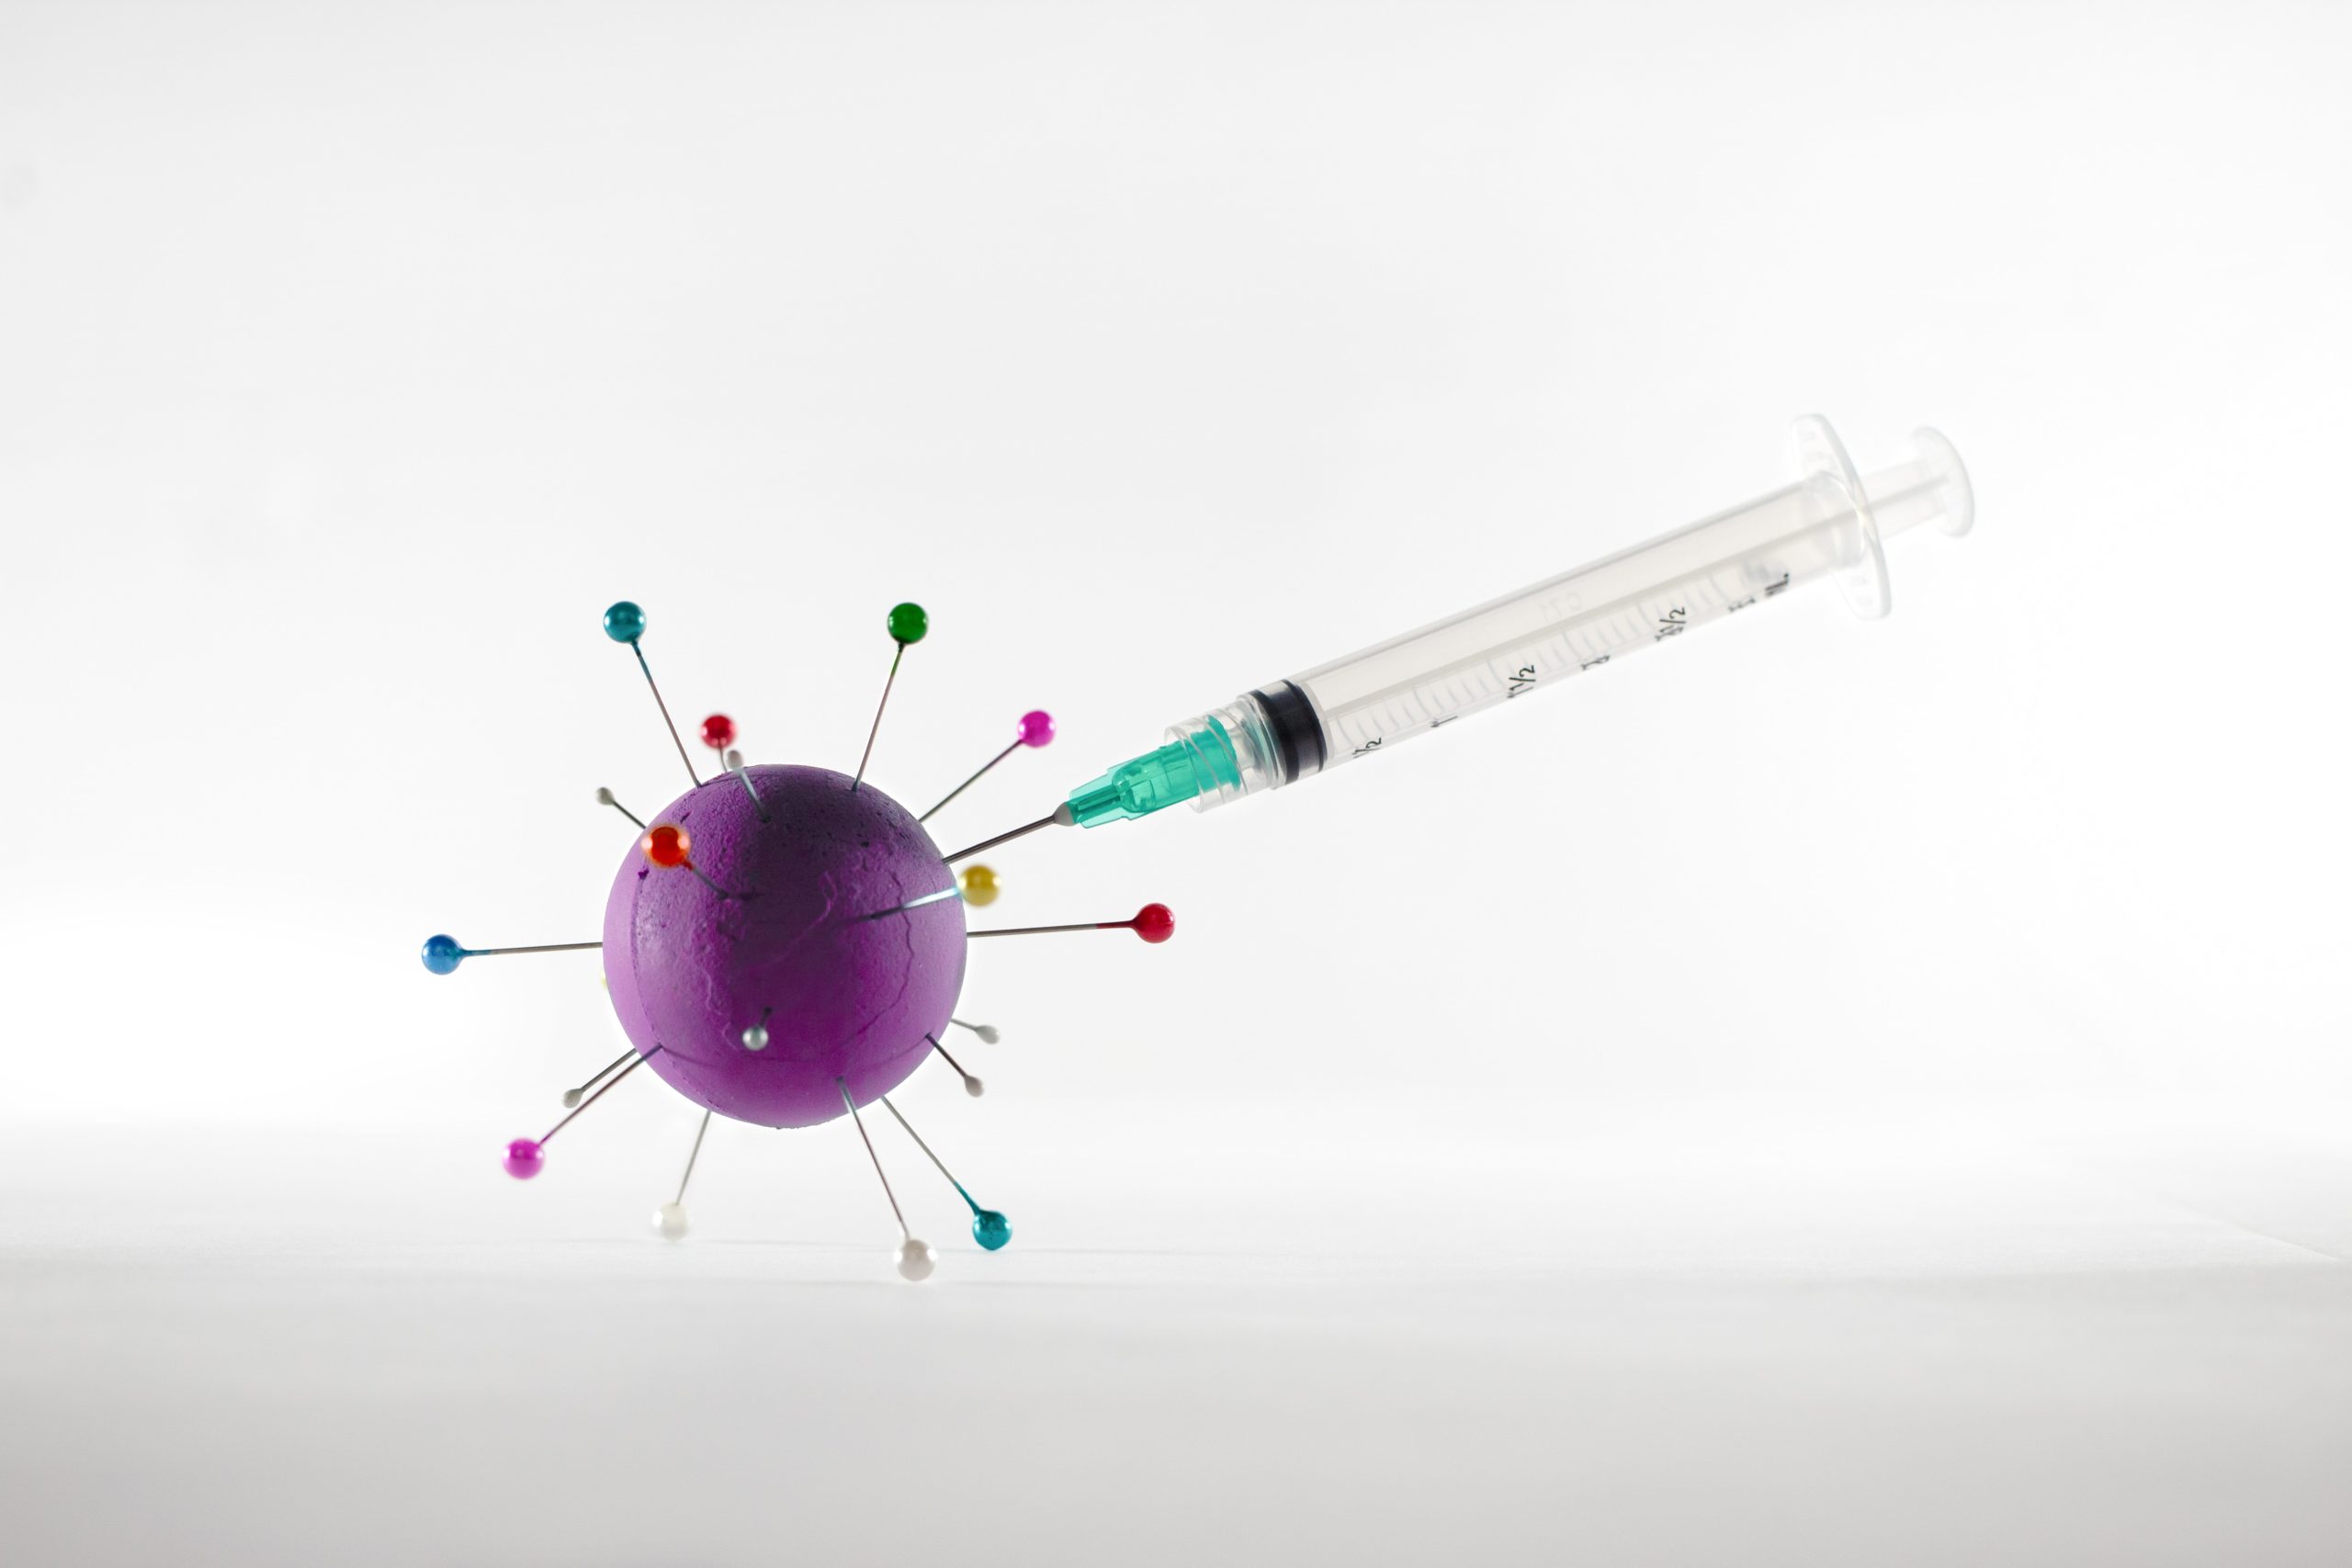 Γκίκας Μαγιορκίνης: Το ιδανικό χρονικό διάστημα μεταξύ του εμβολίου της γρίπης και του mRNA για τον κορονοϊό – 4 είναι οι κανόνες